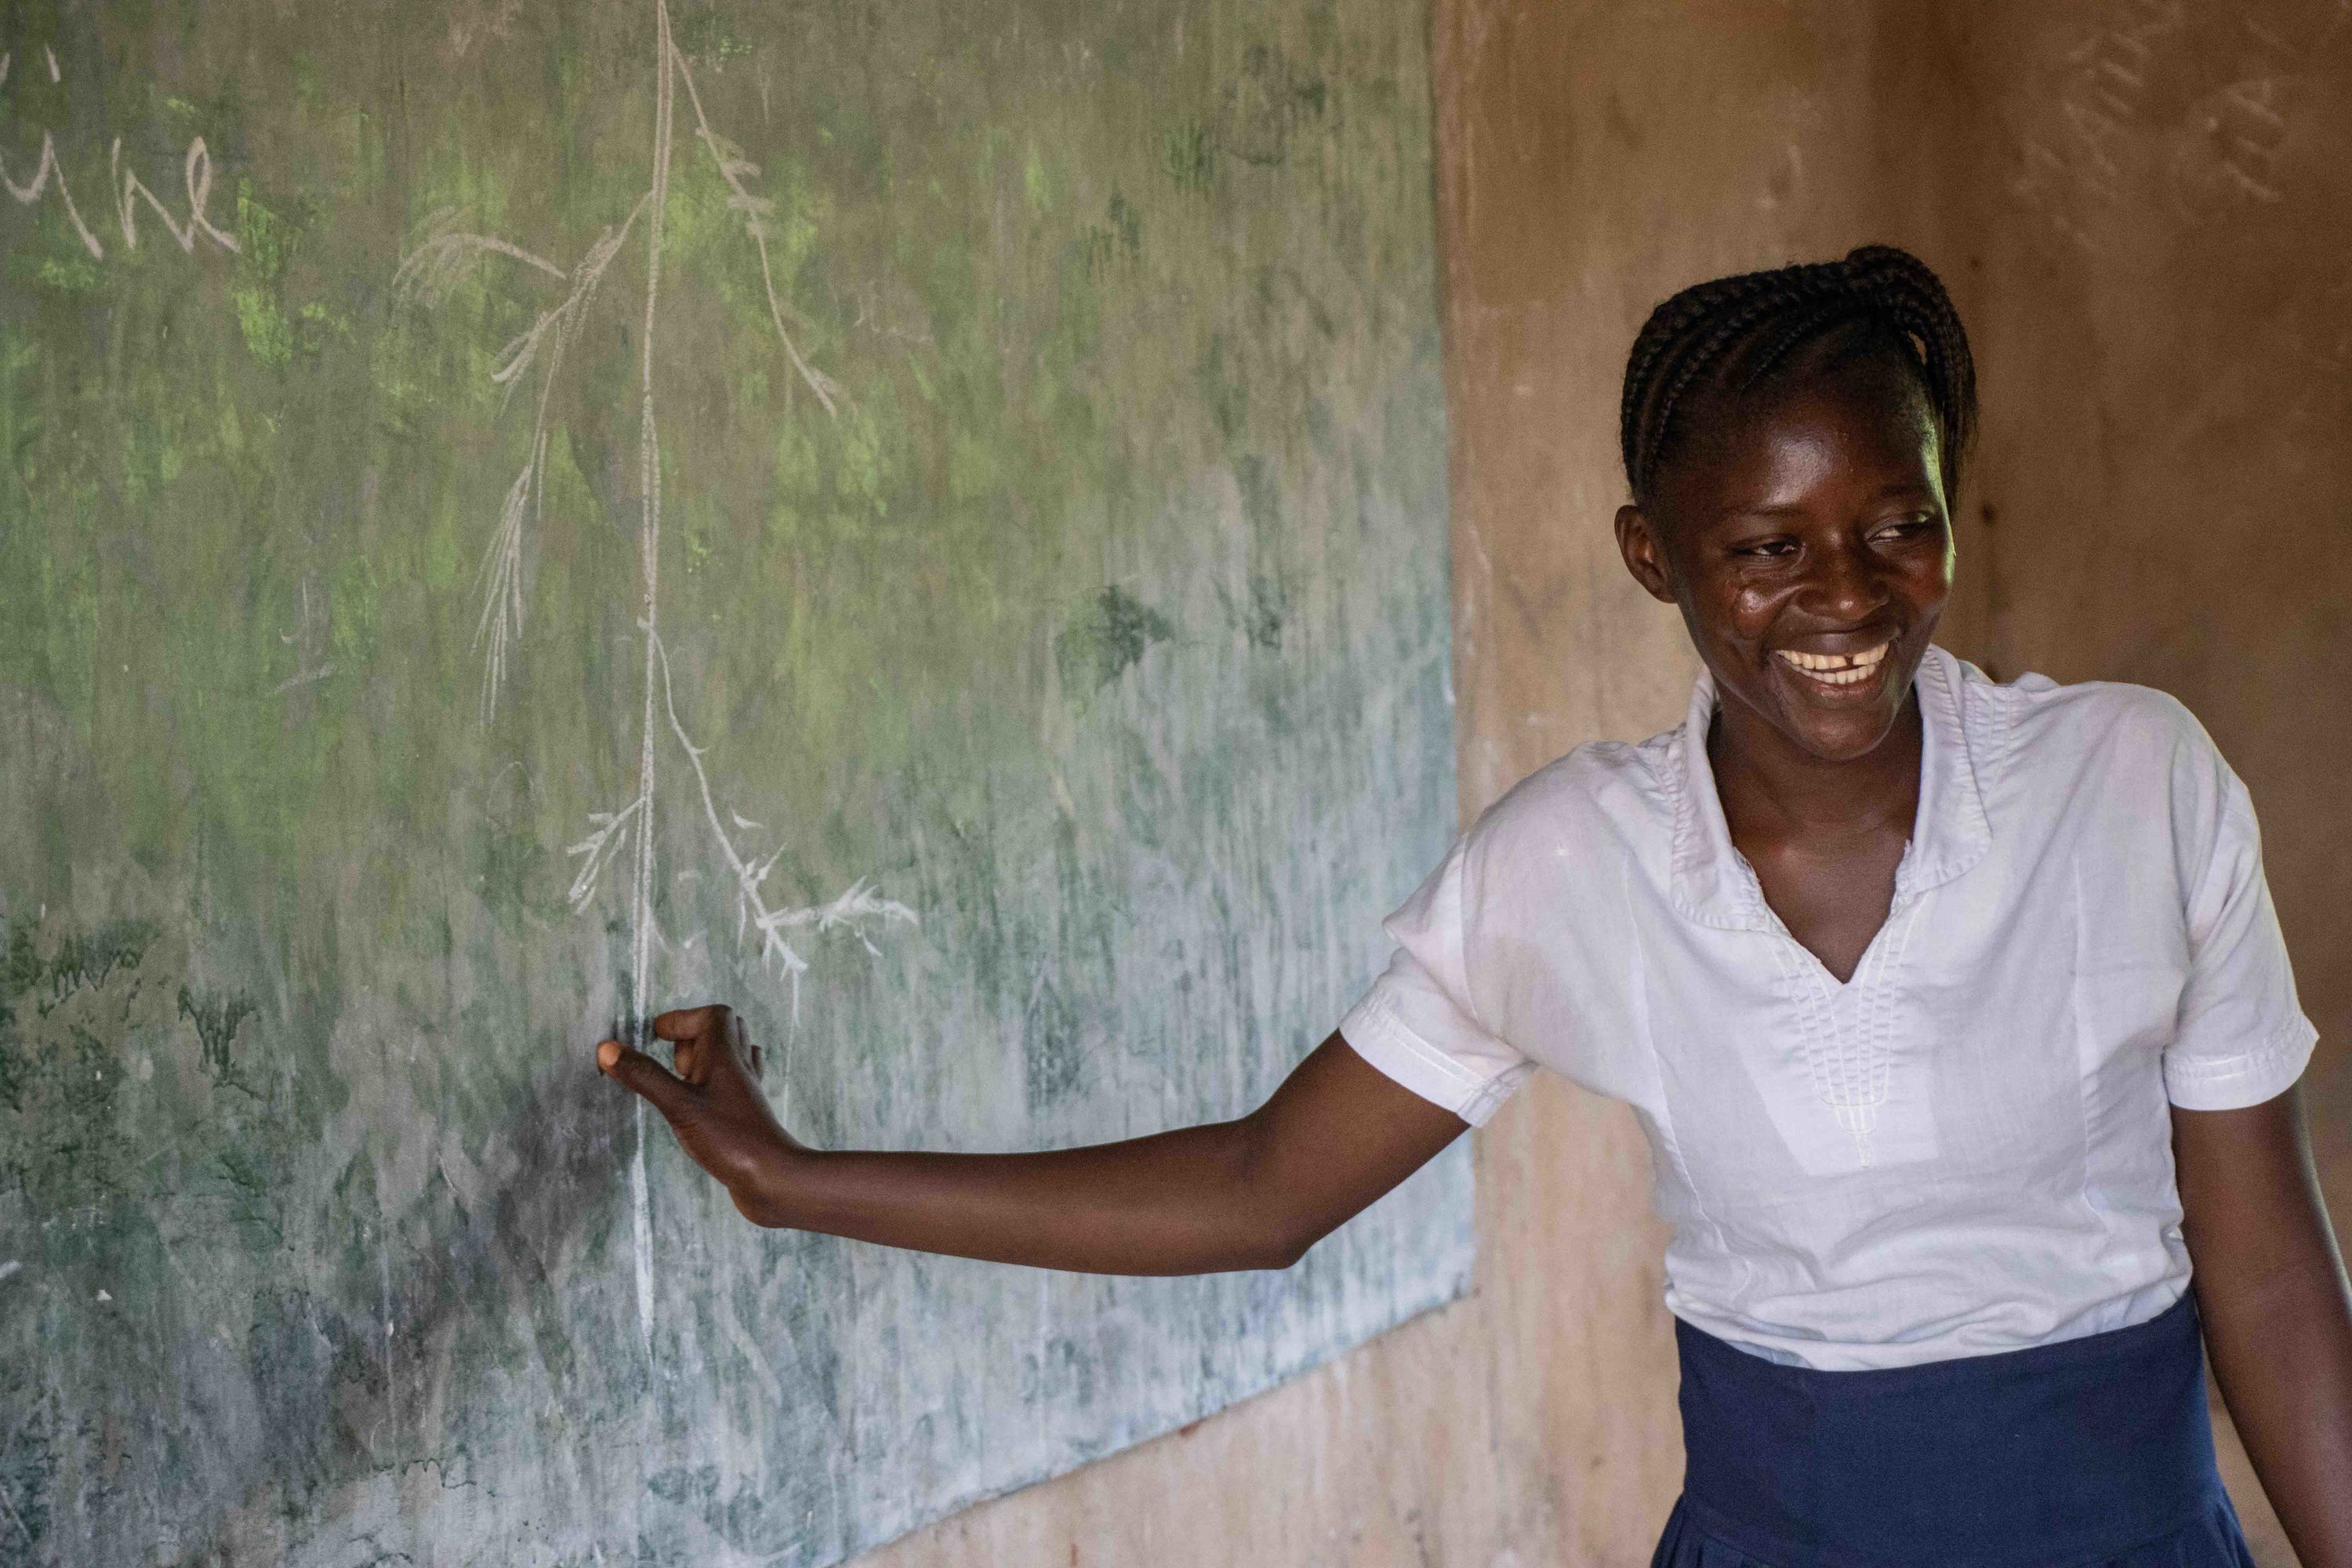 تمكنت يابنزيري، وهي أم شابة لطفلين، من العودة إلى المدرسة بدعم من صندوق "التعليم لا ينتظر" في جمهورية  الكونغو الديمقراطية.